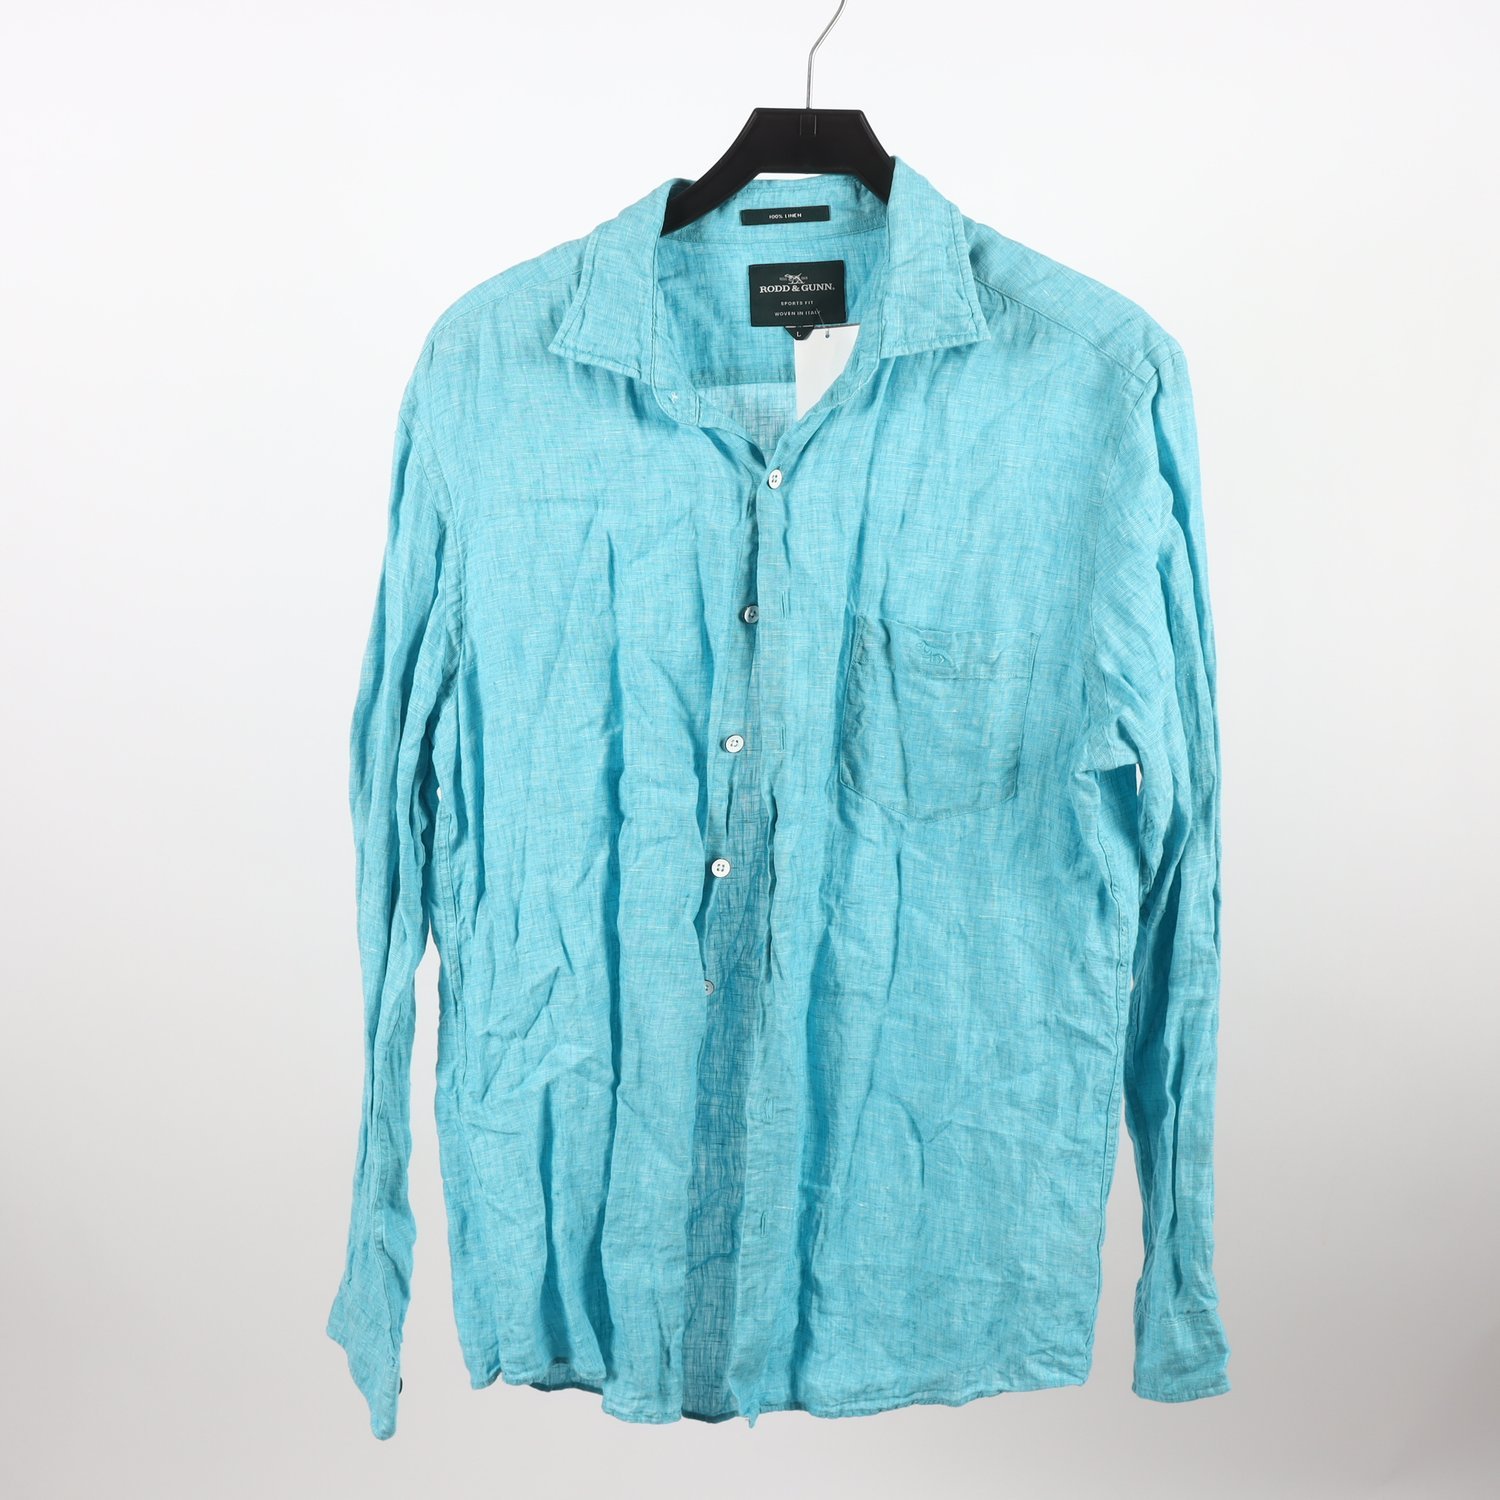 Skjorta, Rodd & Gunn, blå, 100% linen, Stl. L